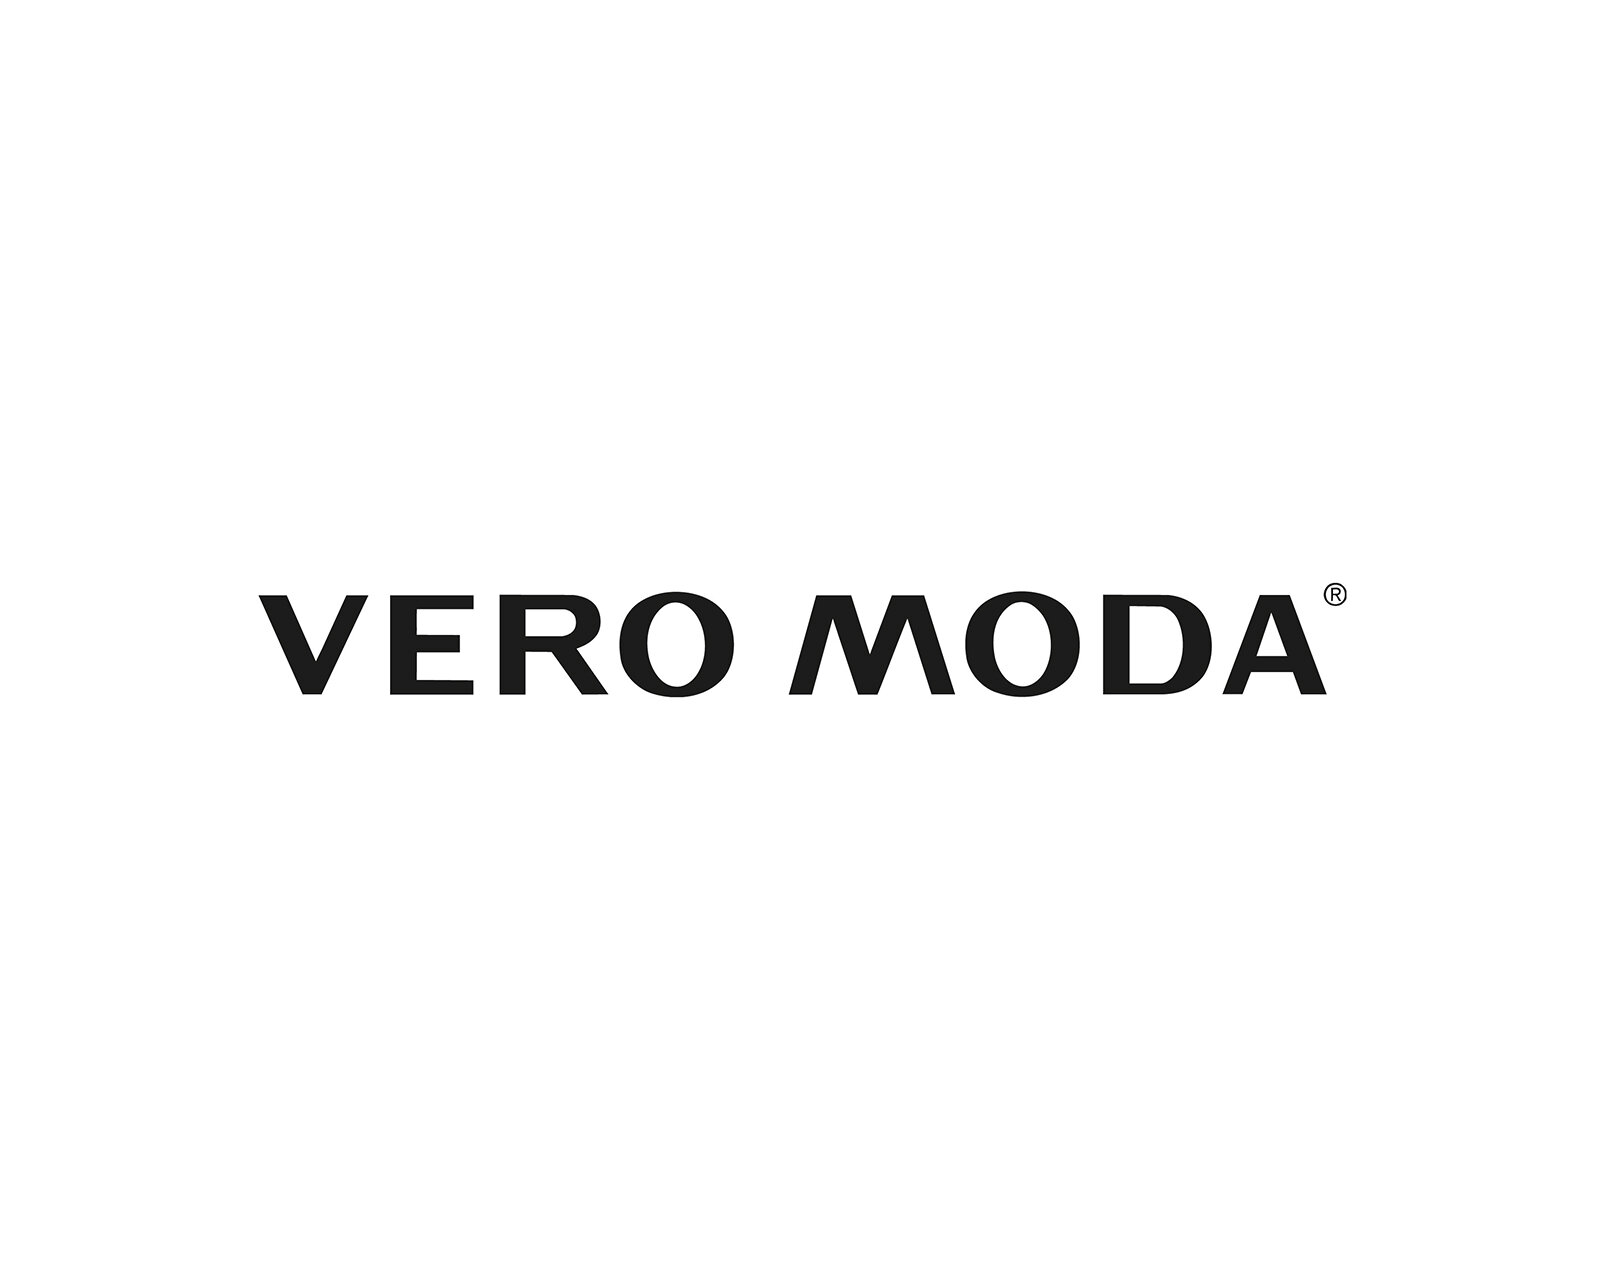 Vero_Moda_logo.jpg